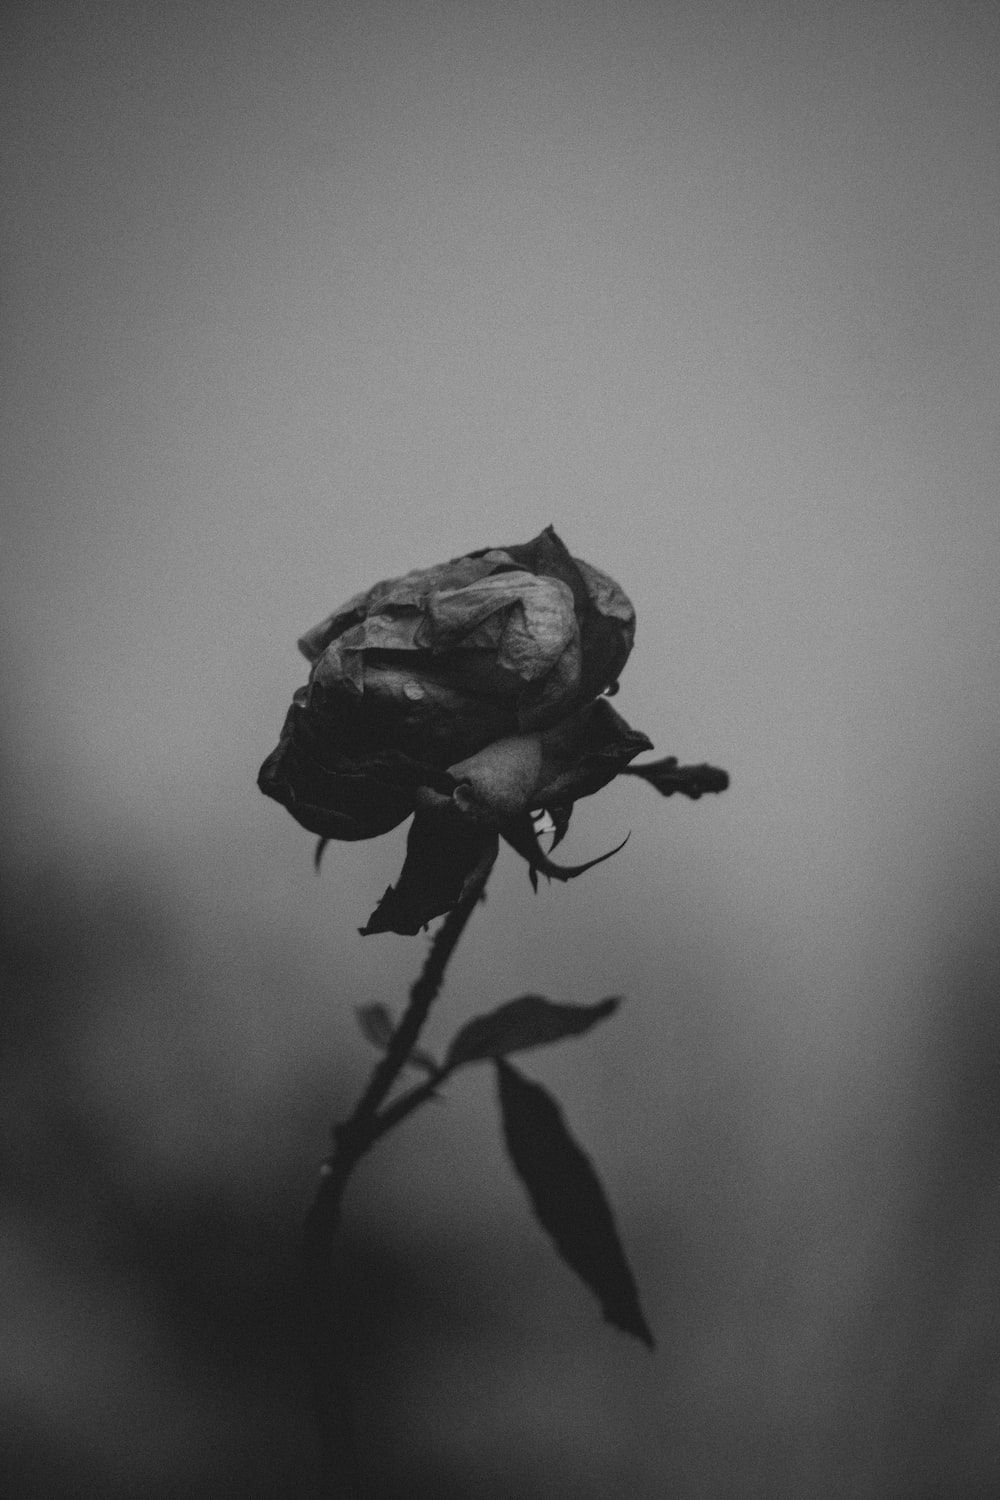  Schwarze Rosen Hintergrundbild 1000x1500. Foto Zum Thema Ein Schwarz Weiß Foto Einer Einzelnen Rose